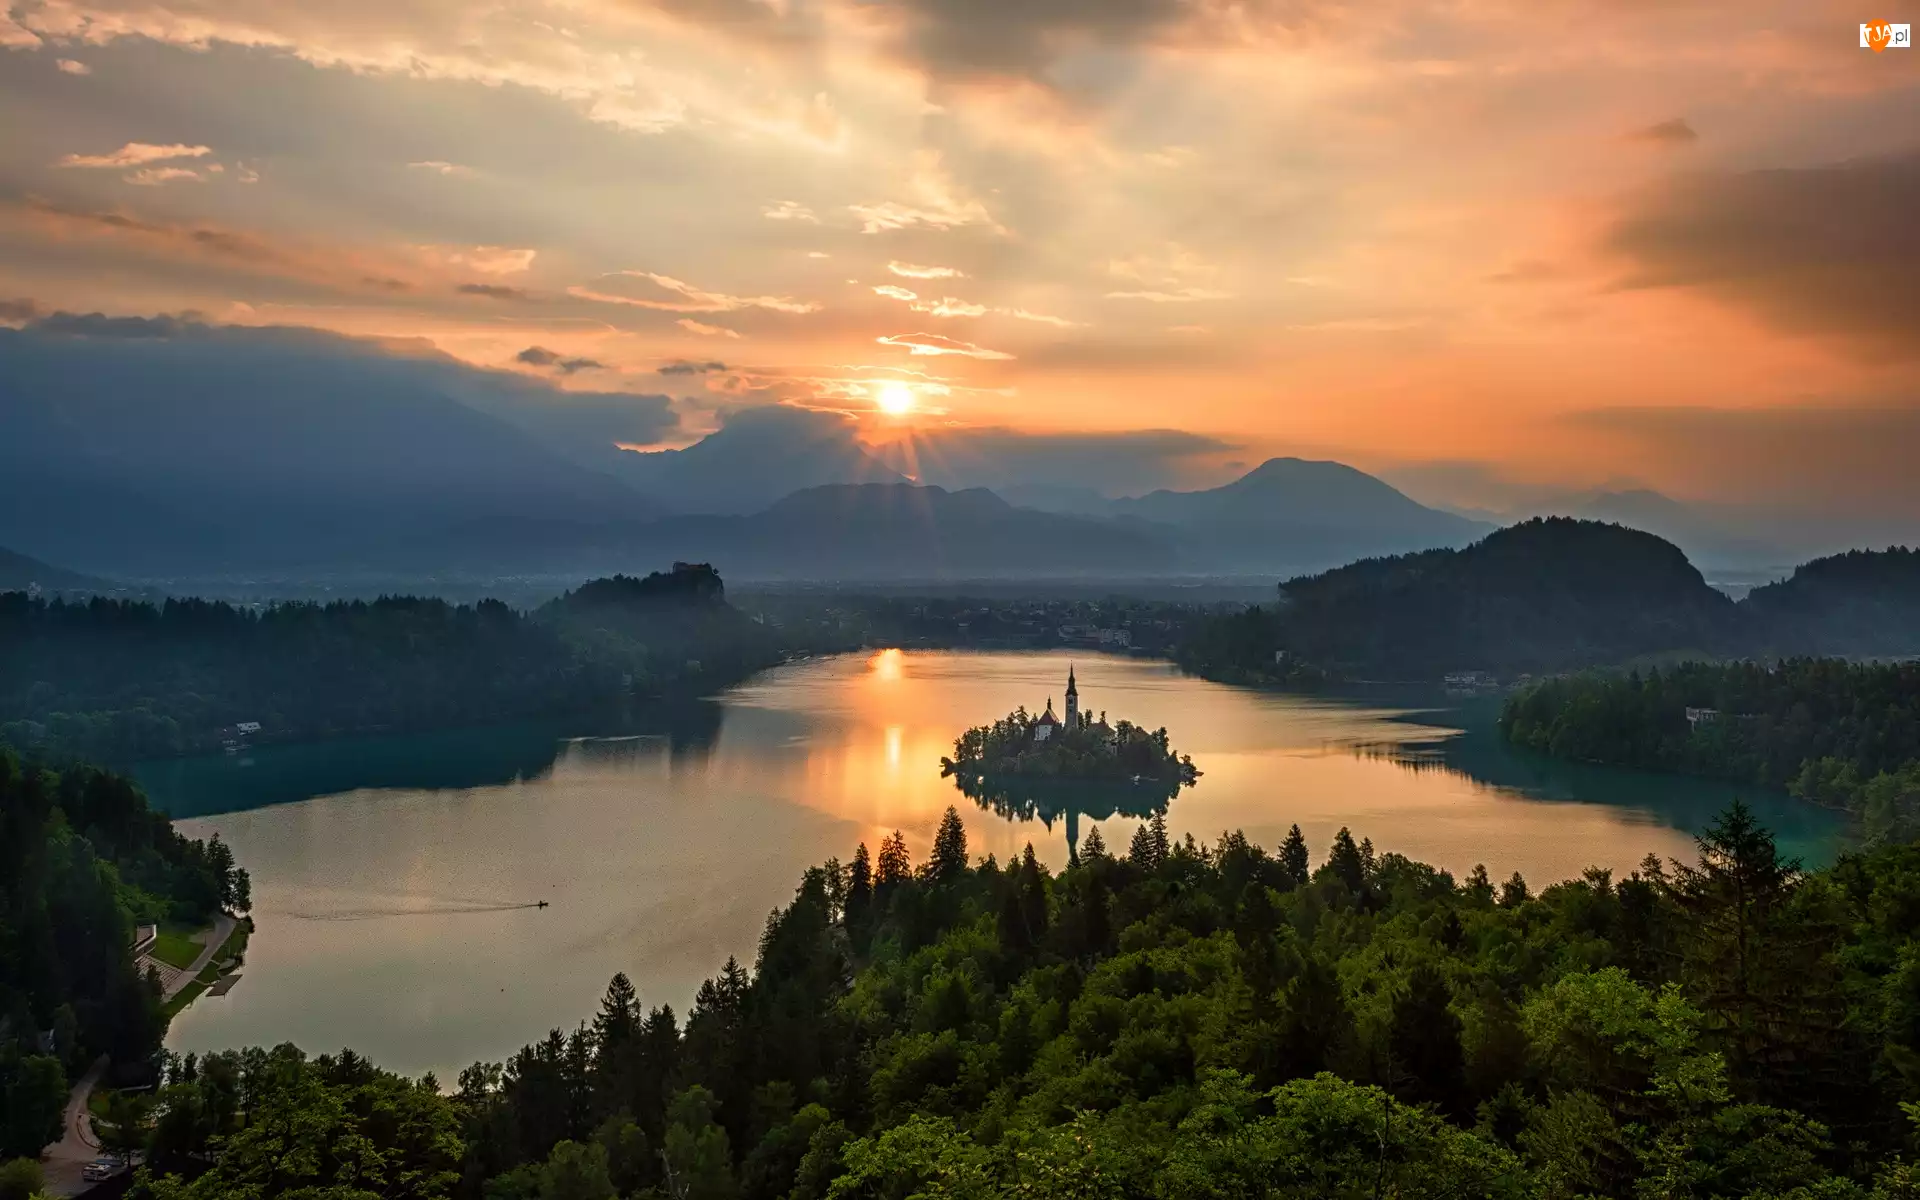 Wyspa Blejski Otok, Góry Alpy Julijskie, Drzewa
, Słowenia, Chmury, Zachód słońca, Jezioro Bled